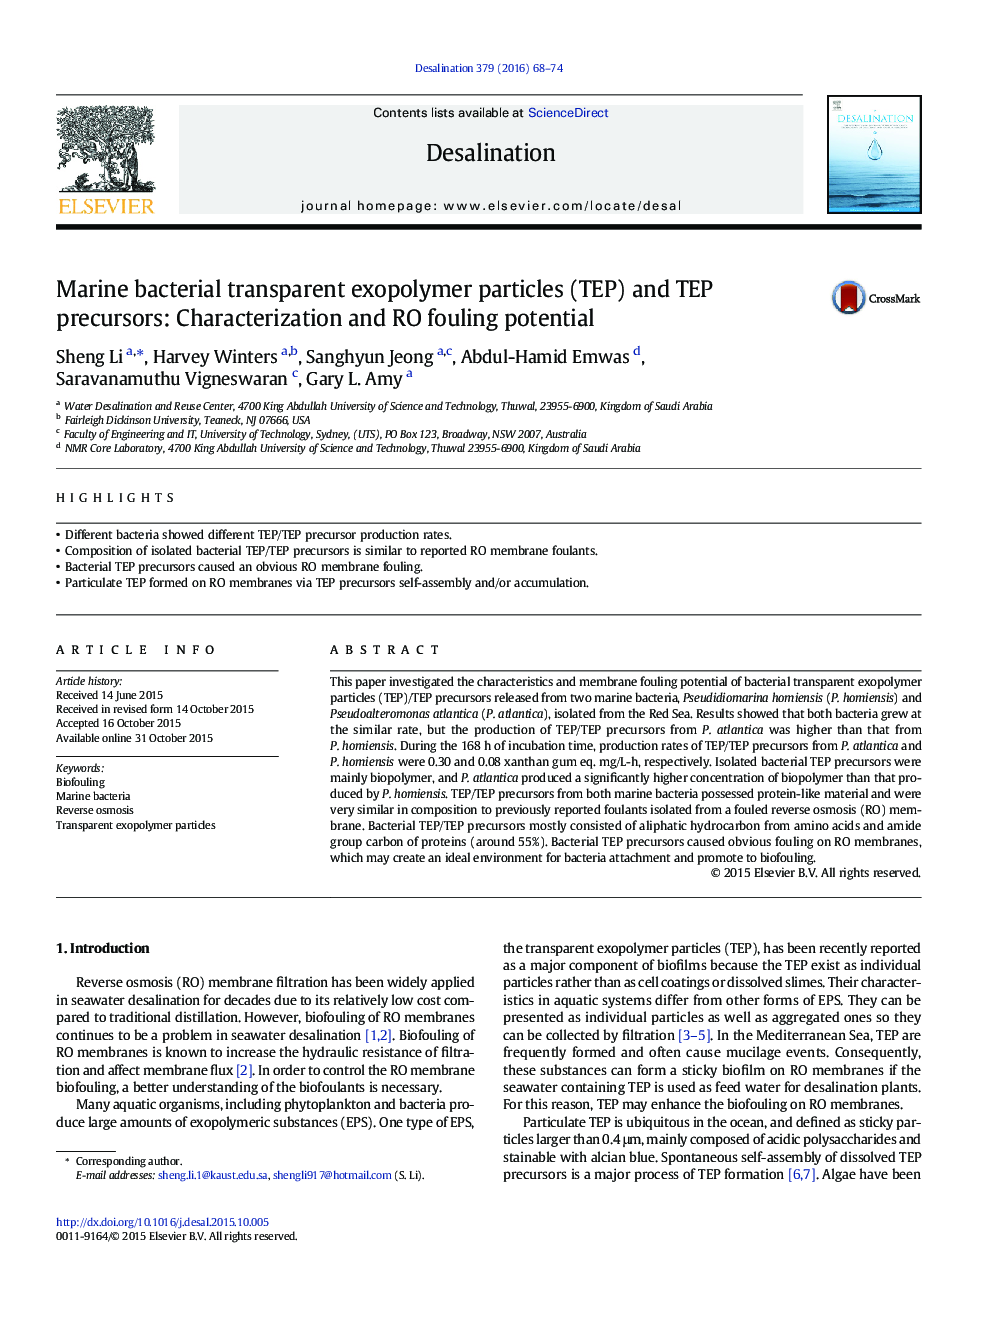 باکتری ذرات exopolymer شفاف دریایی (TEP) و پیش سازهای TEP: خواص و RO بالقوه رسوب